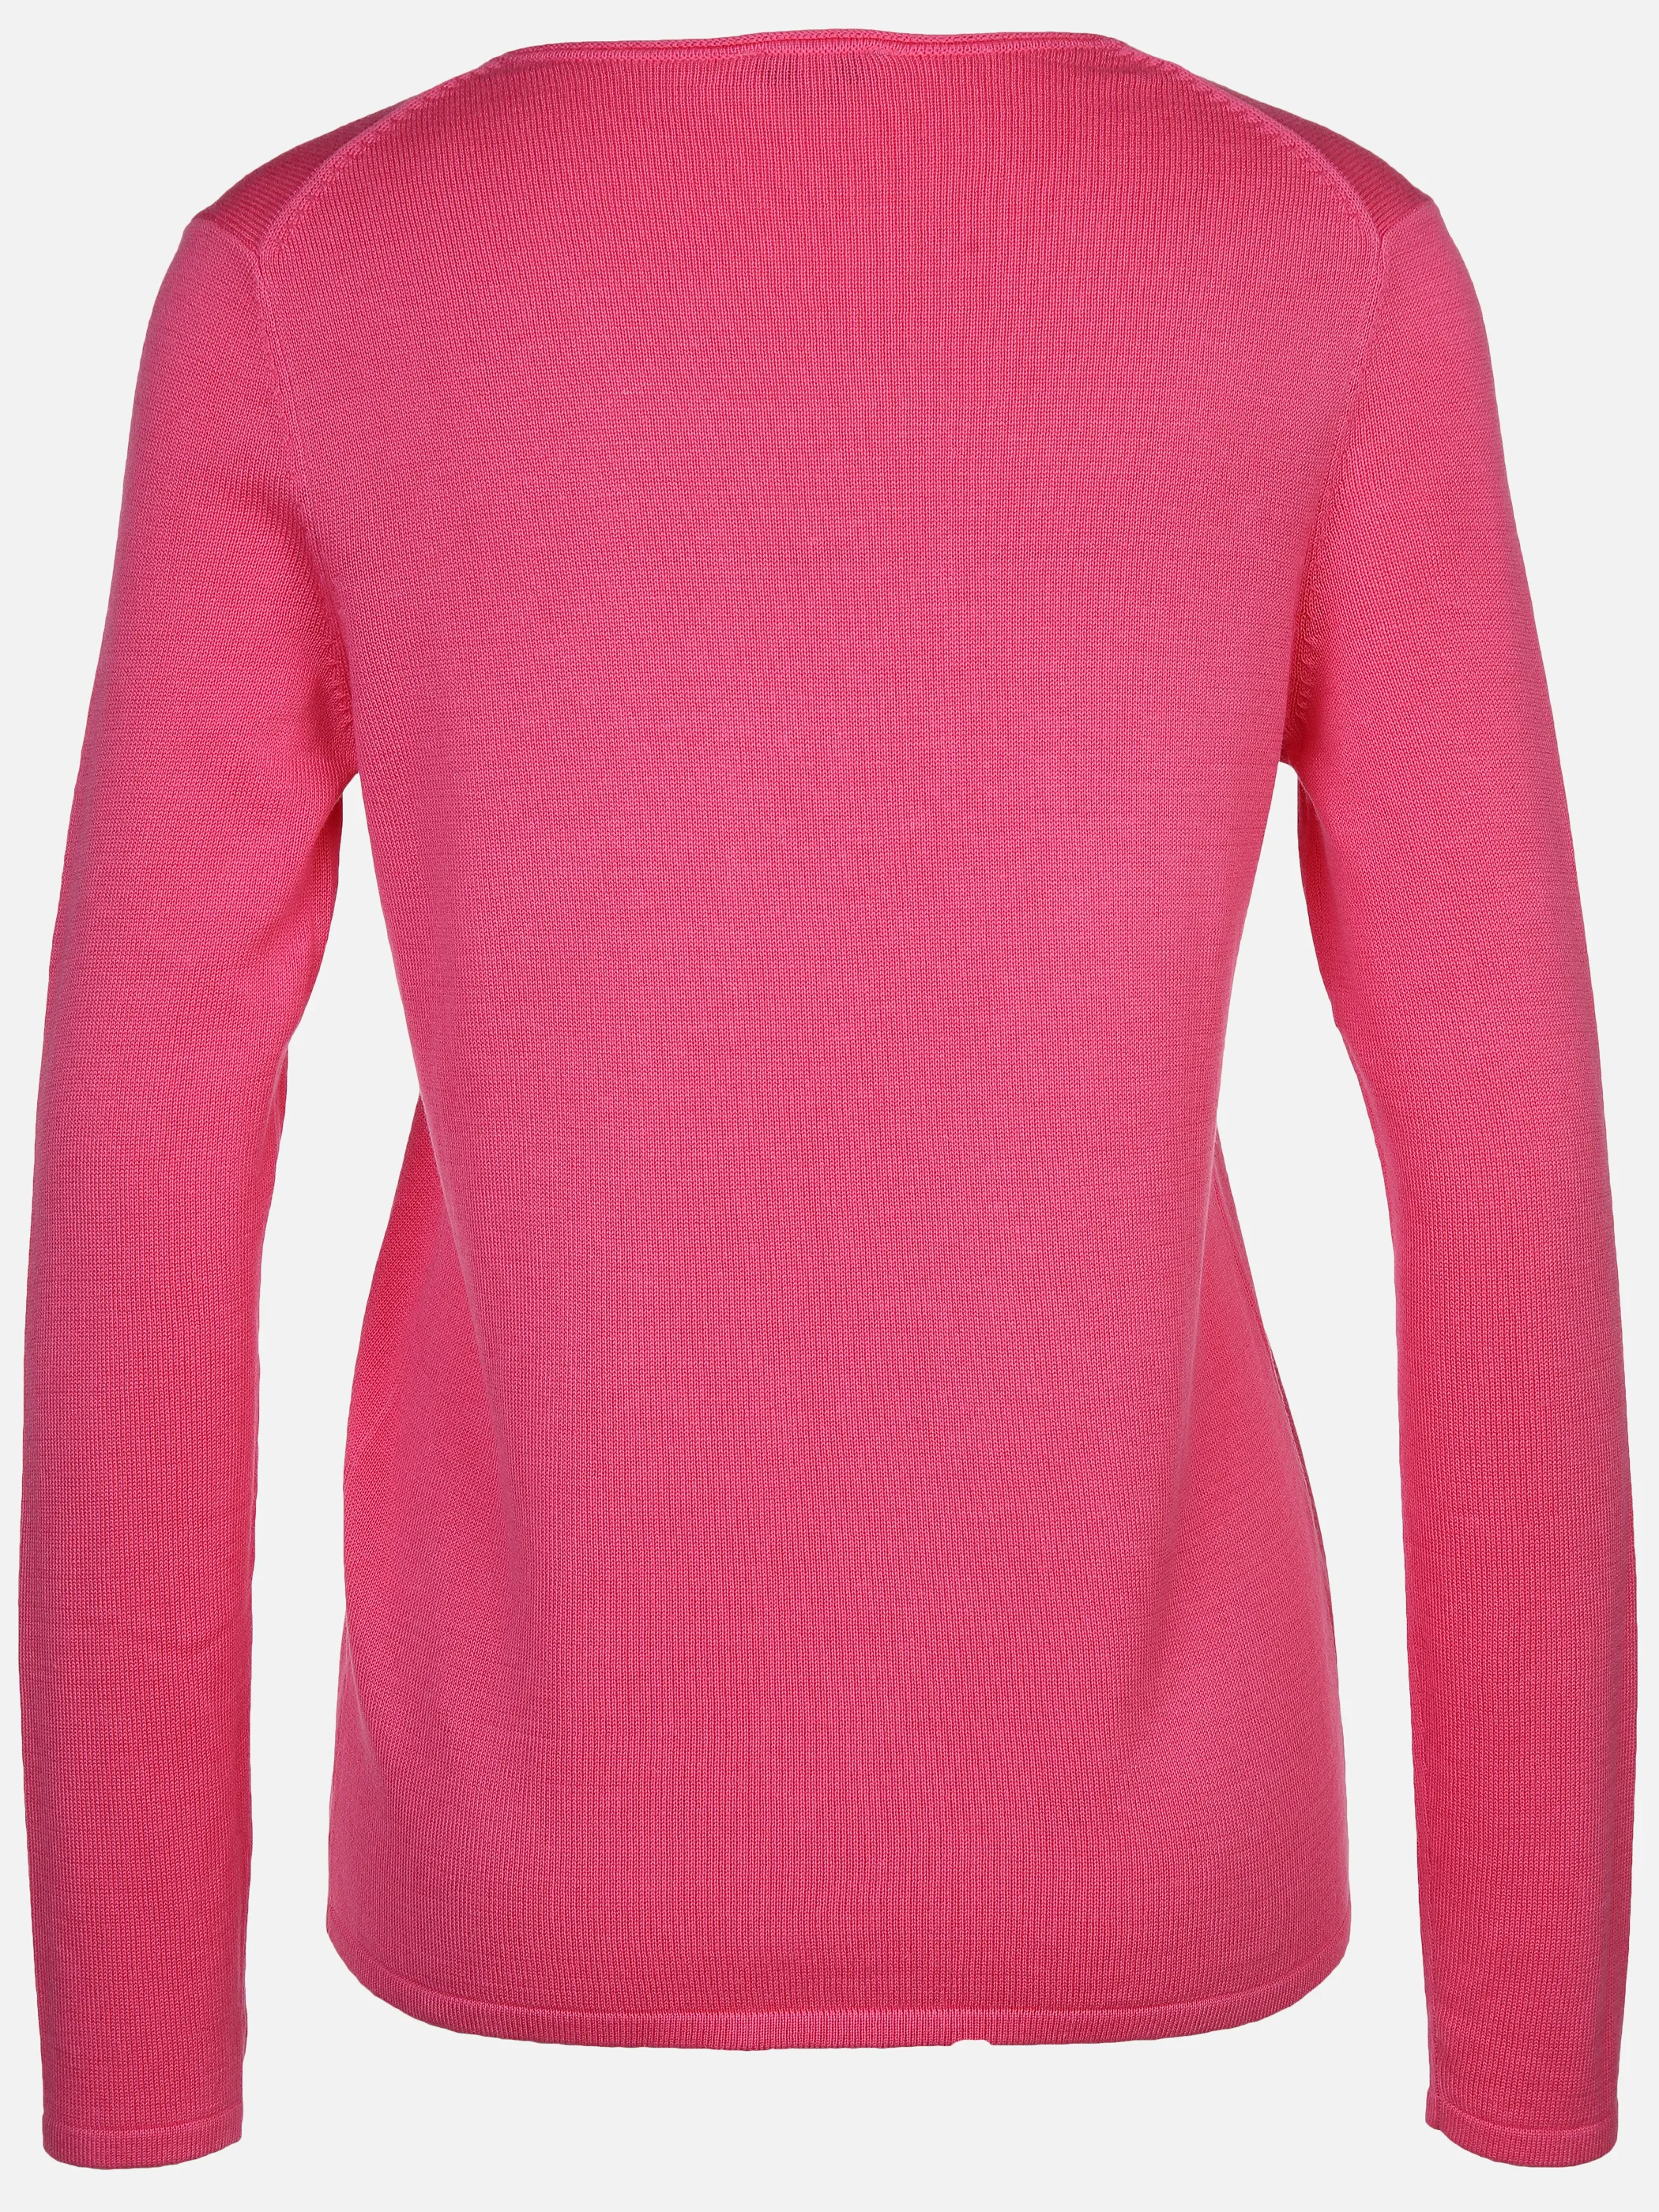 Tom Tailor 1012976 NOS sweater basic v-neck Pink 824304 15799 2